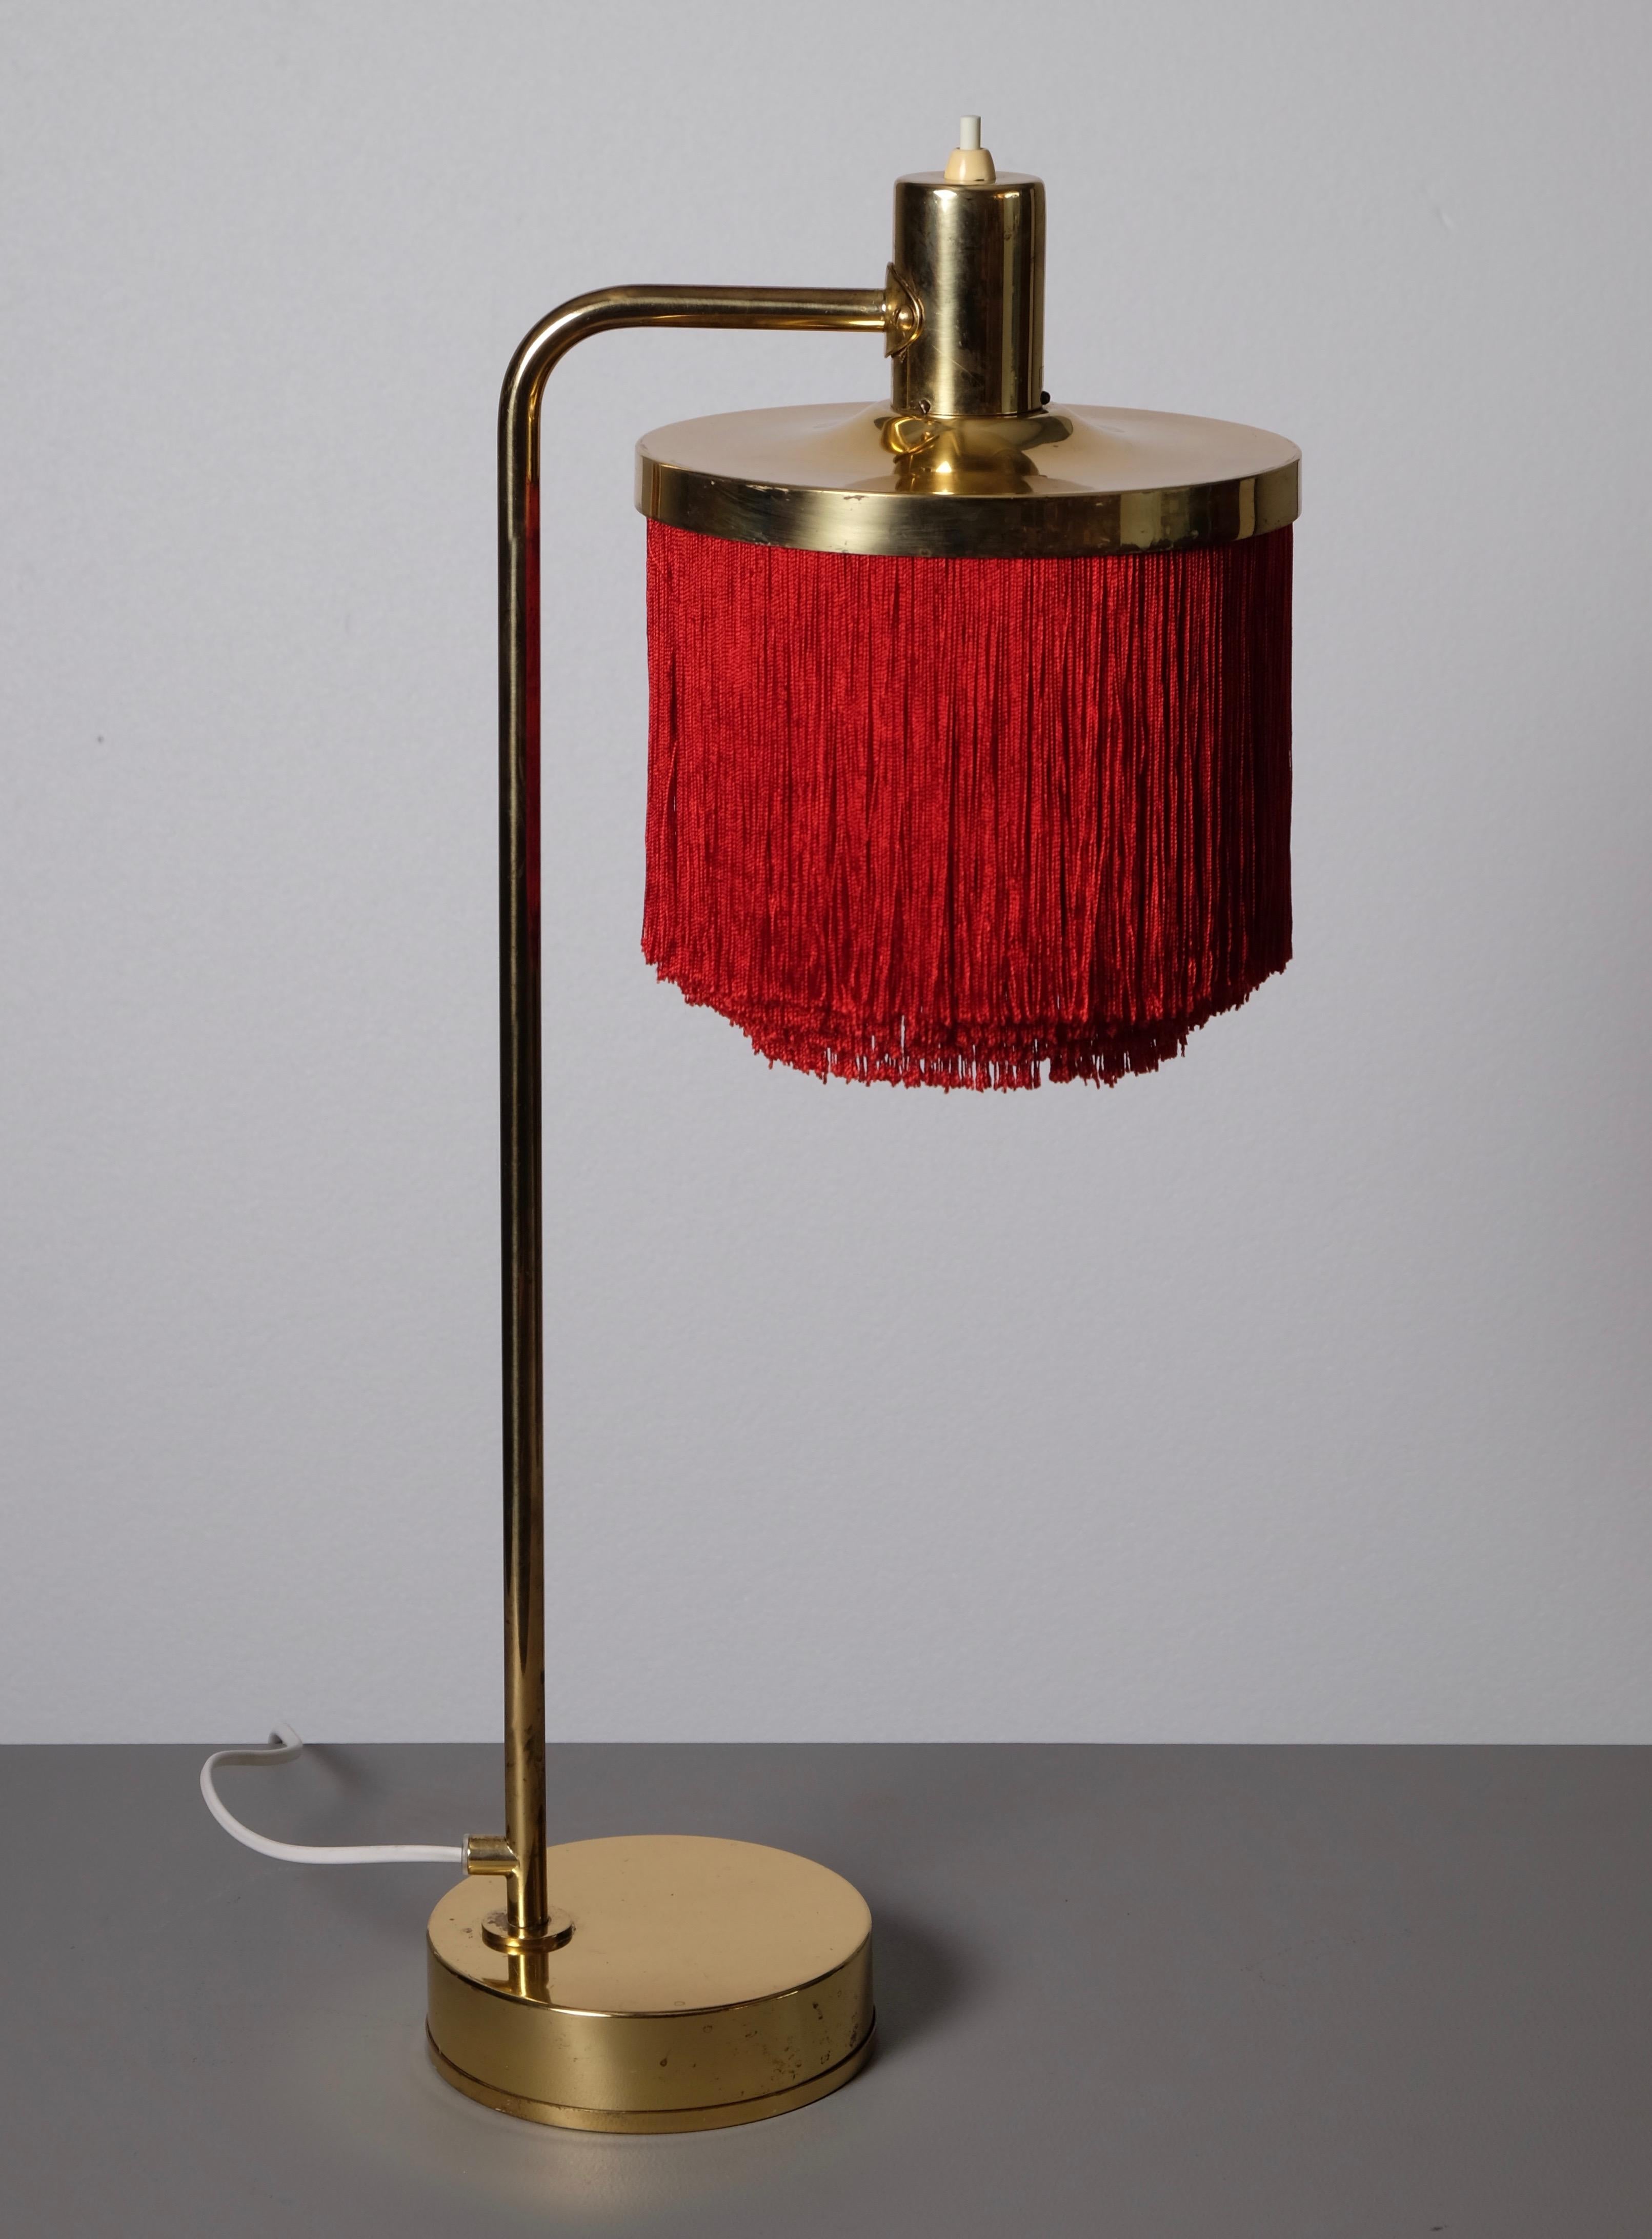 Tischlampe aus Messing mit roten Fransen, hergestellt von Hans-Agne Jakobsson in Markaryd, Schweden, 1960er Jahre.
Neue Verkabelung.